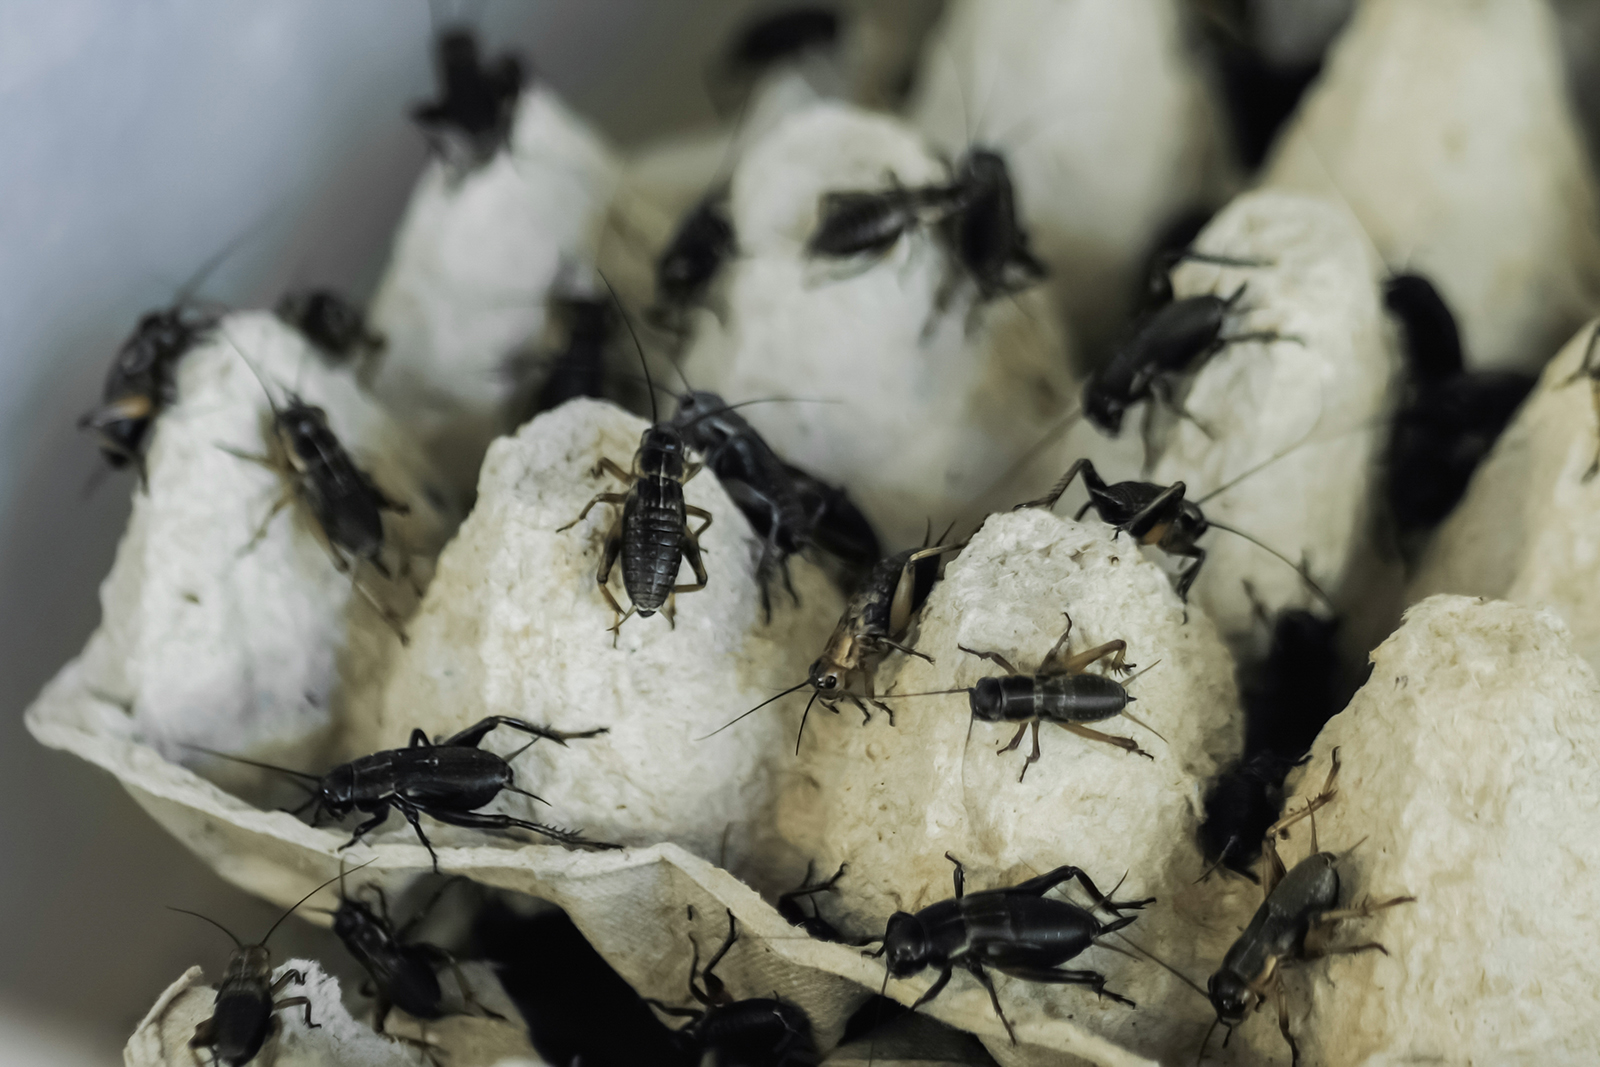 Why do crickets like egg cartons?